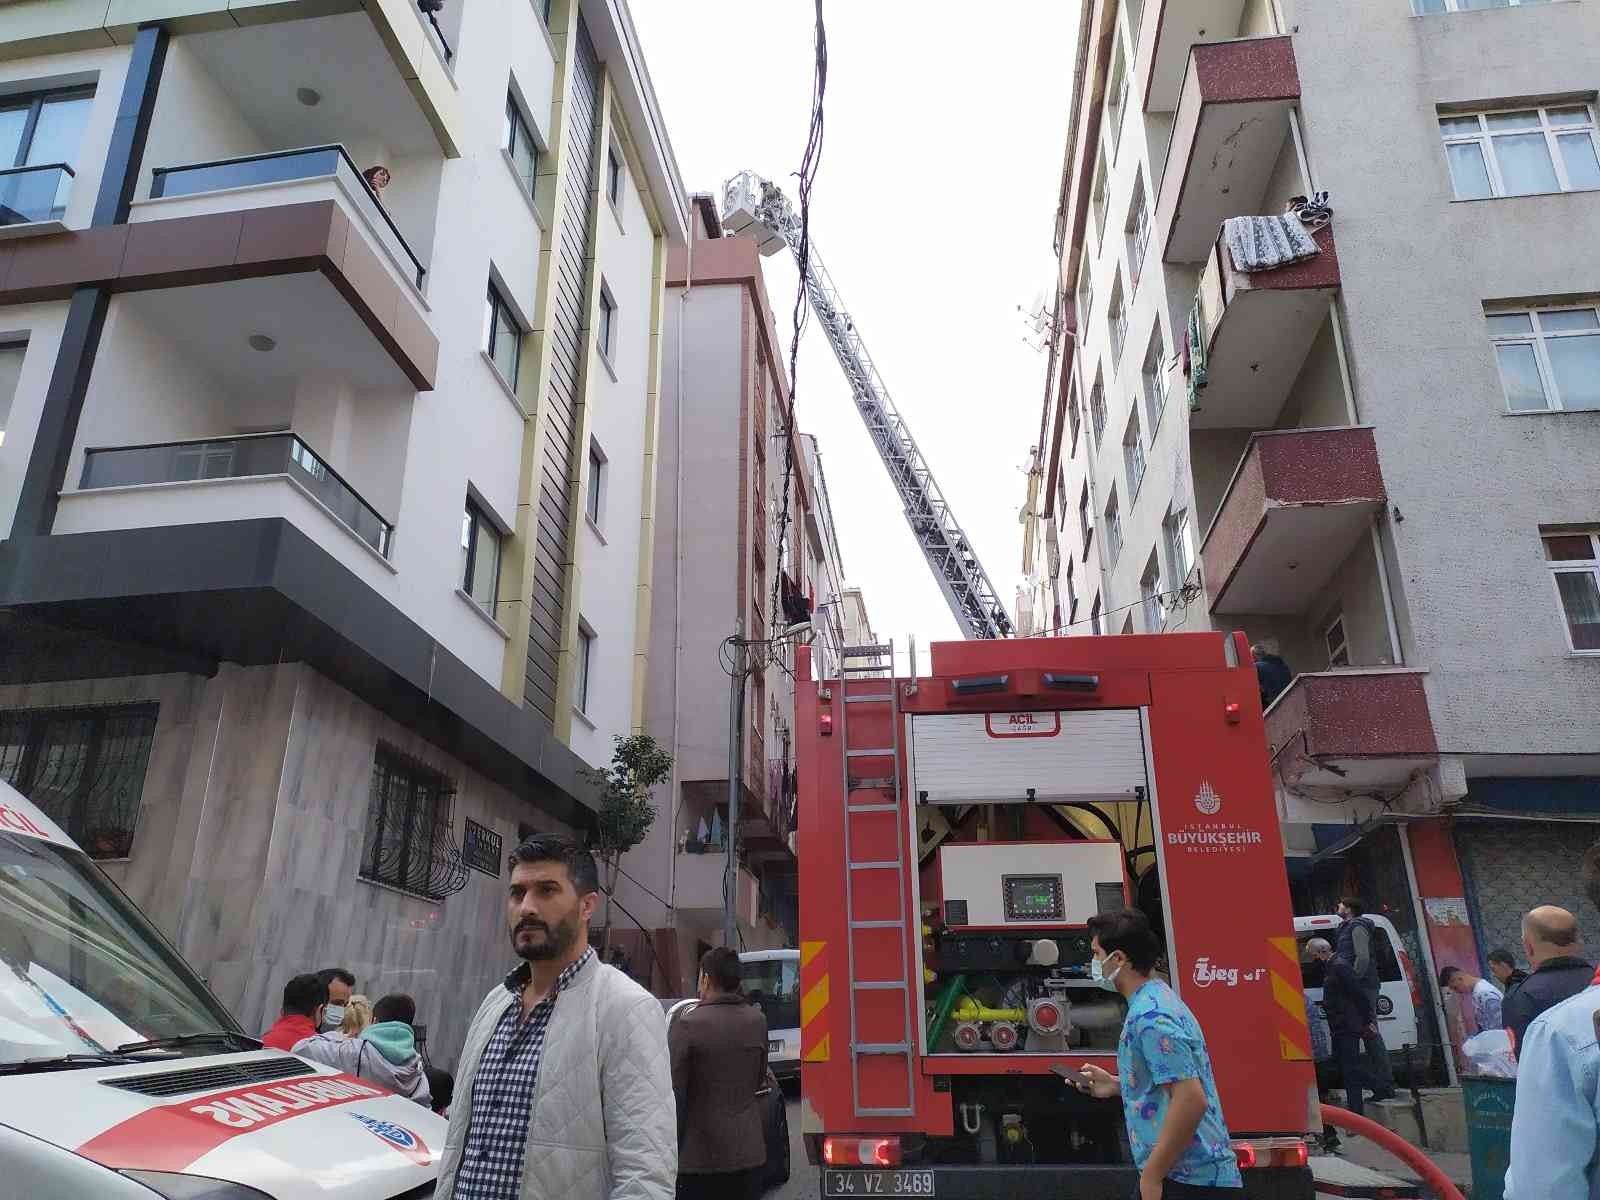 Bahçelievler’de 6 katlı bir binanın çatı katında yangın çıktı #istanbul